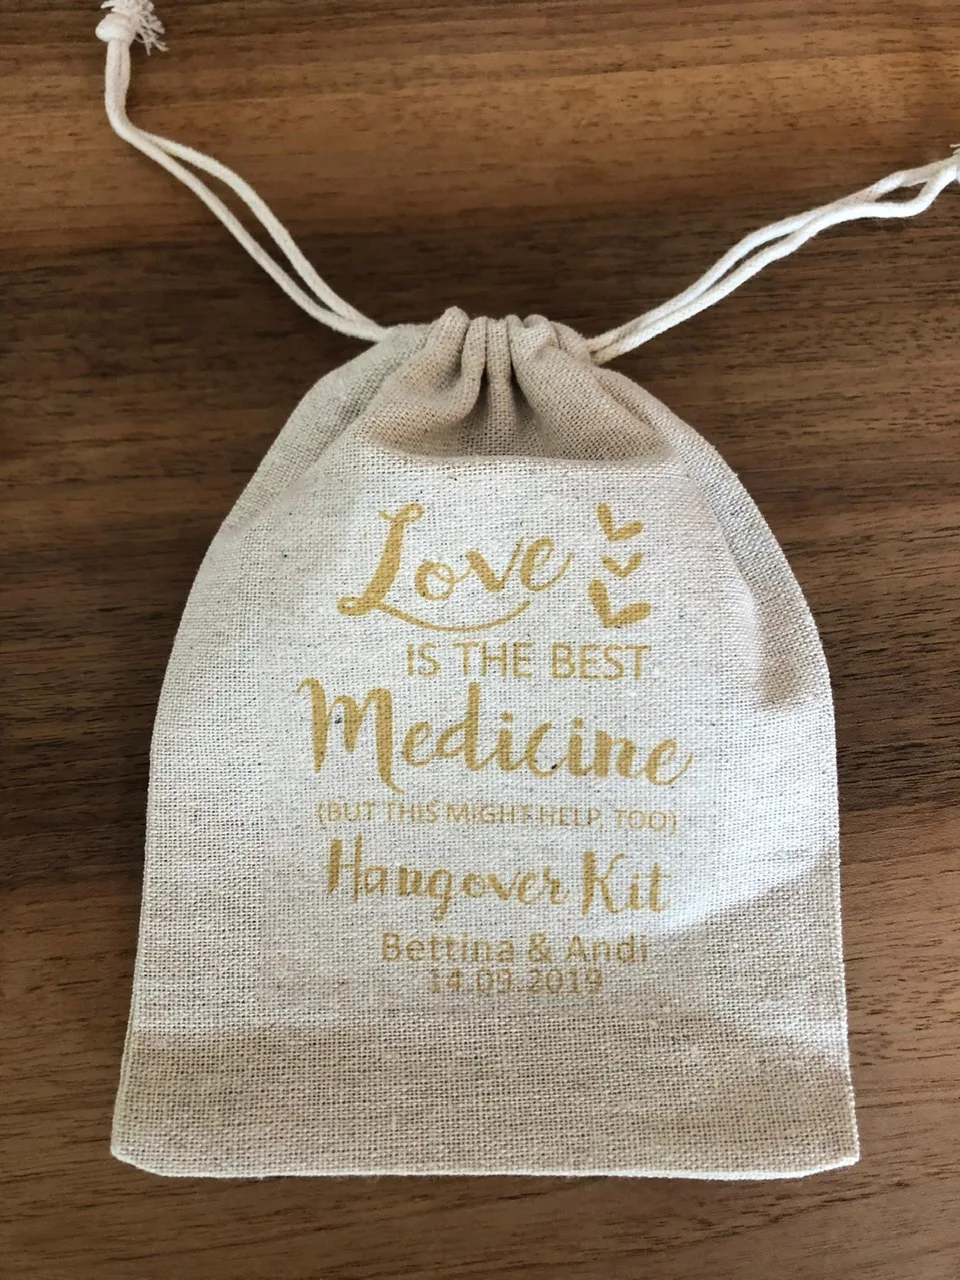 Пользовательская любовь-лучший медицинский свадебный набор от похмелья сувенирные пакеты мальчишник, девичник вечерние Подарочный пакет конфеты пакеты